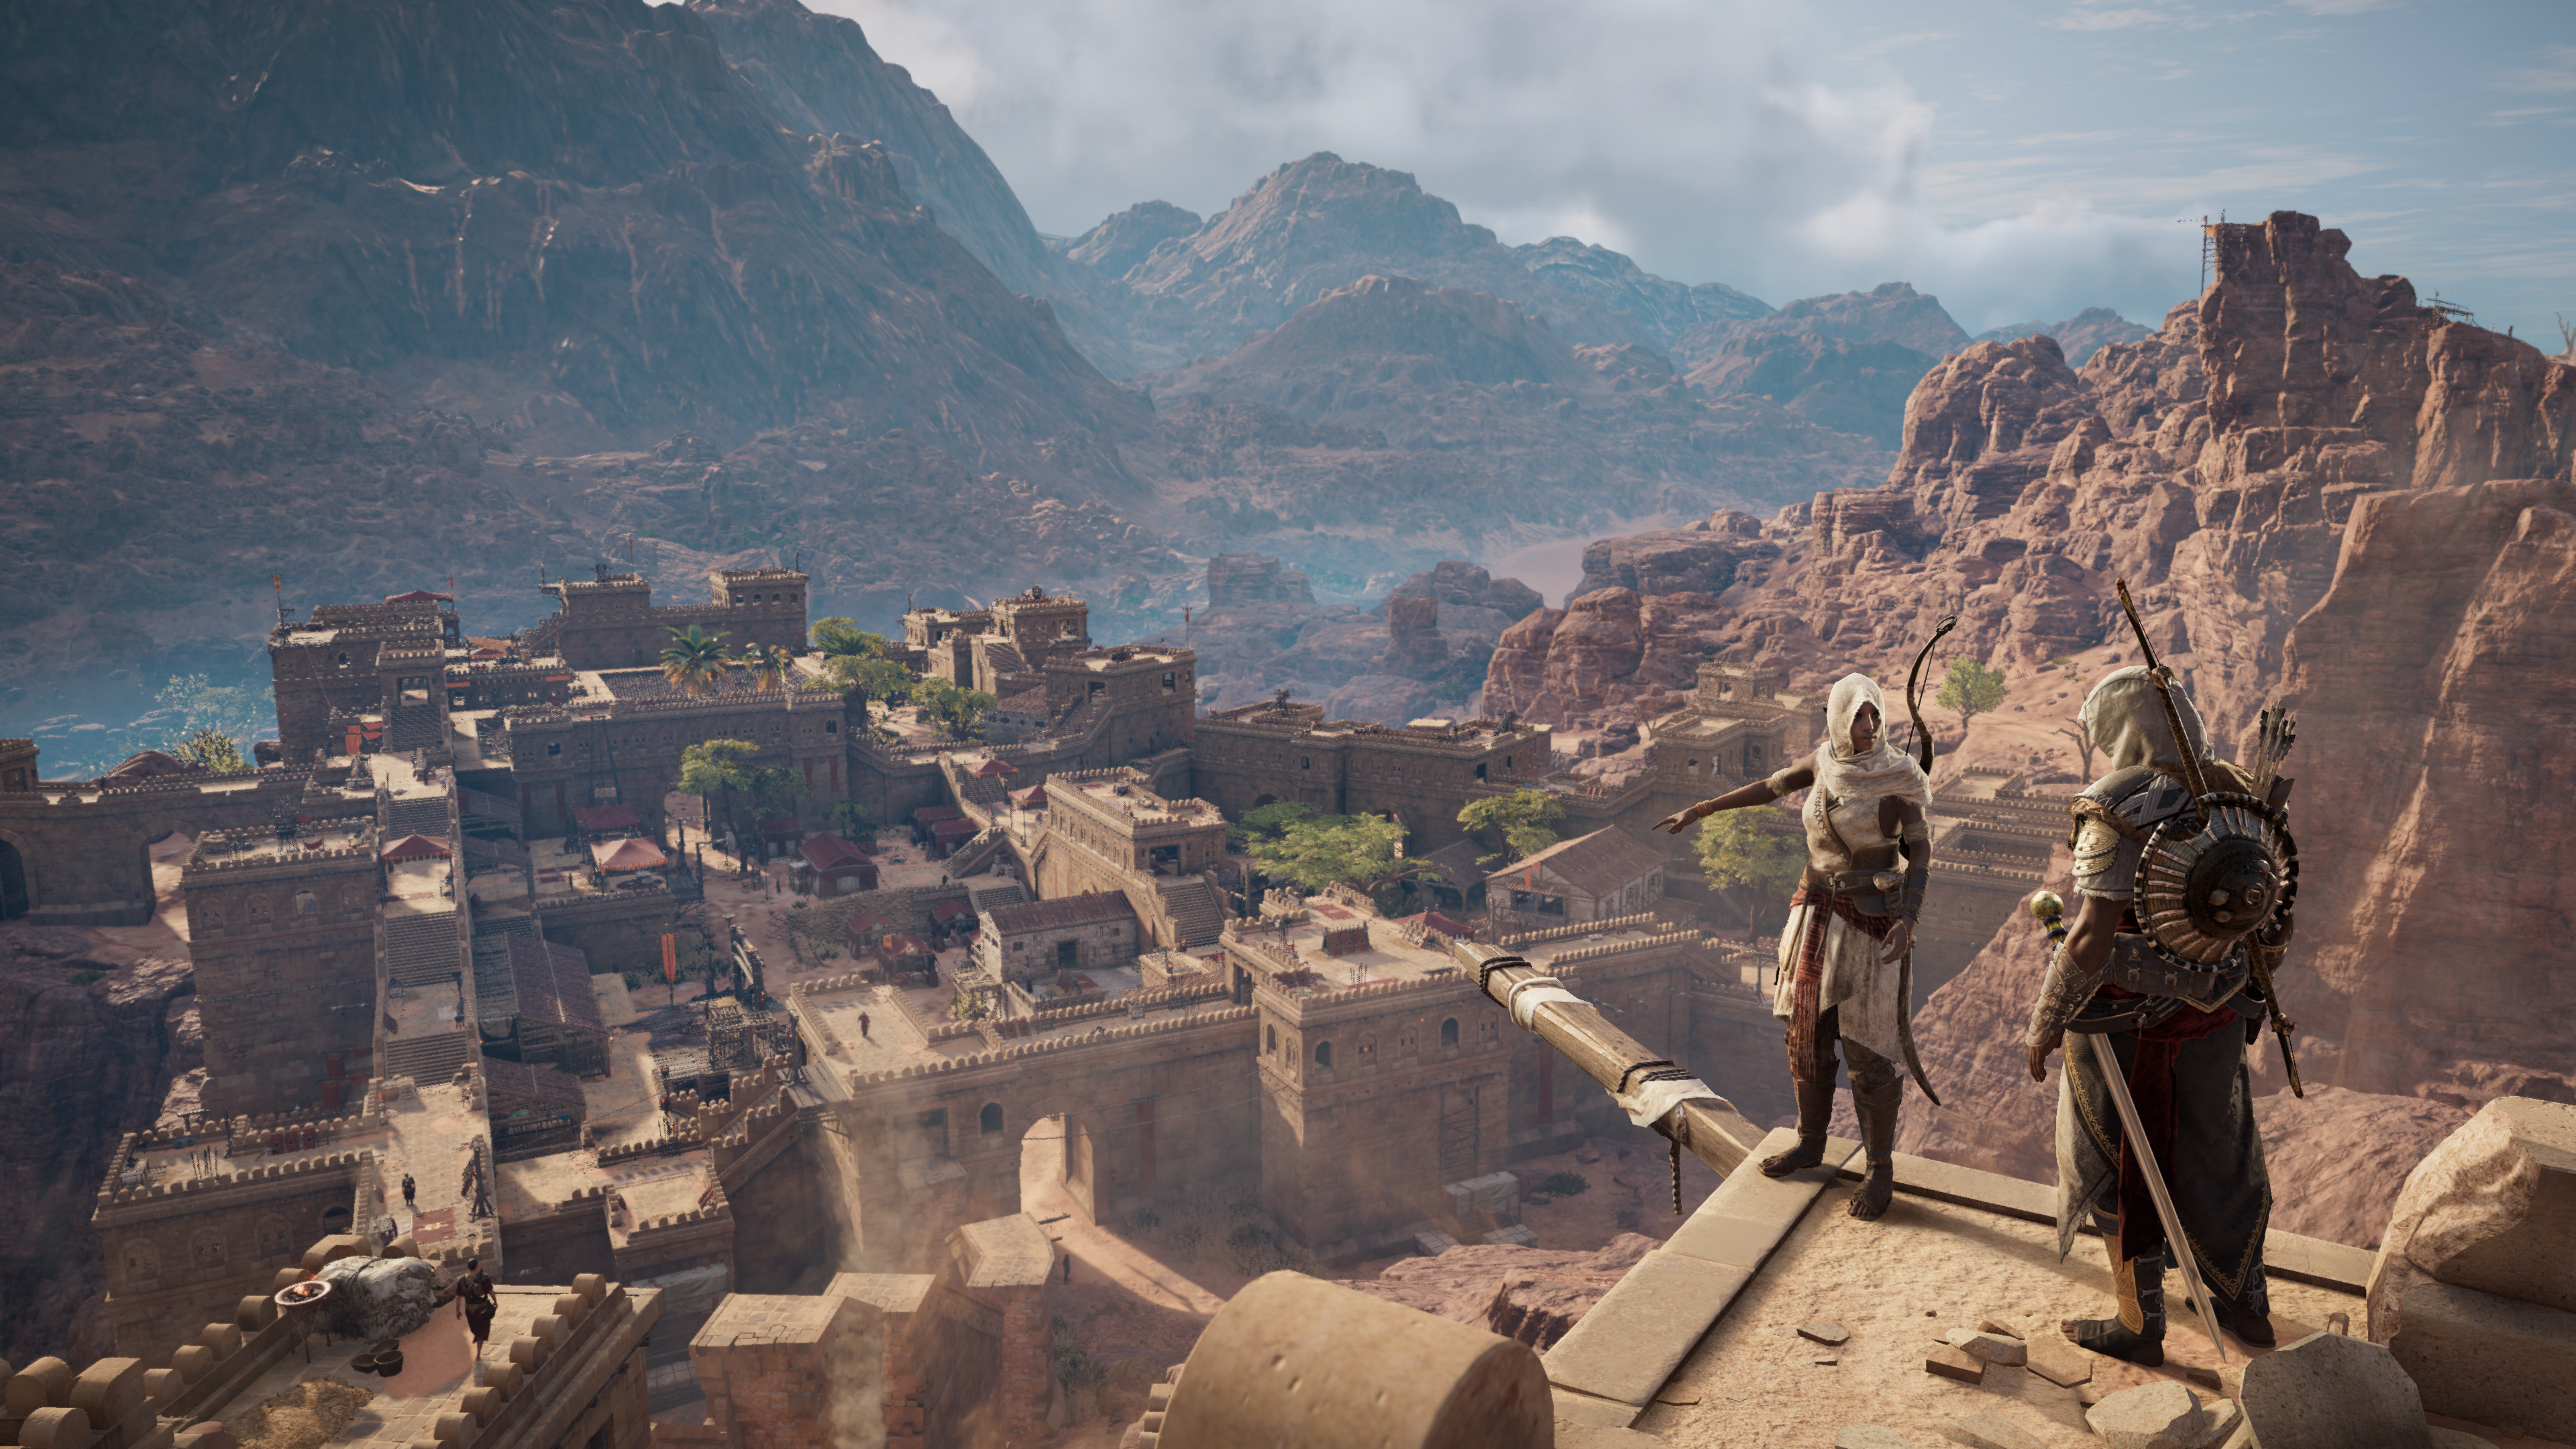 Assassin's Creed Origins - DLC Review